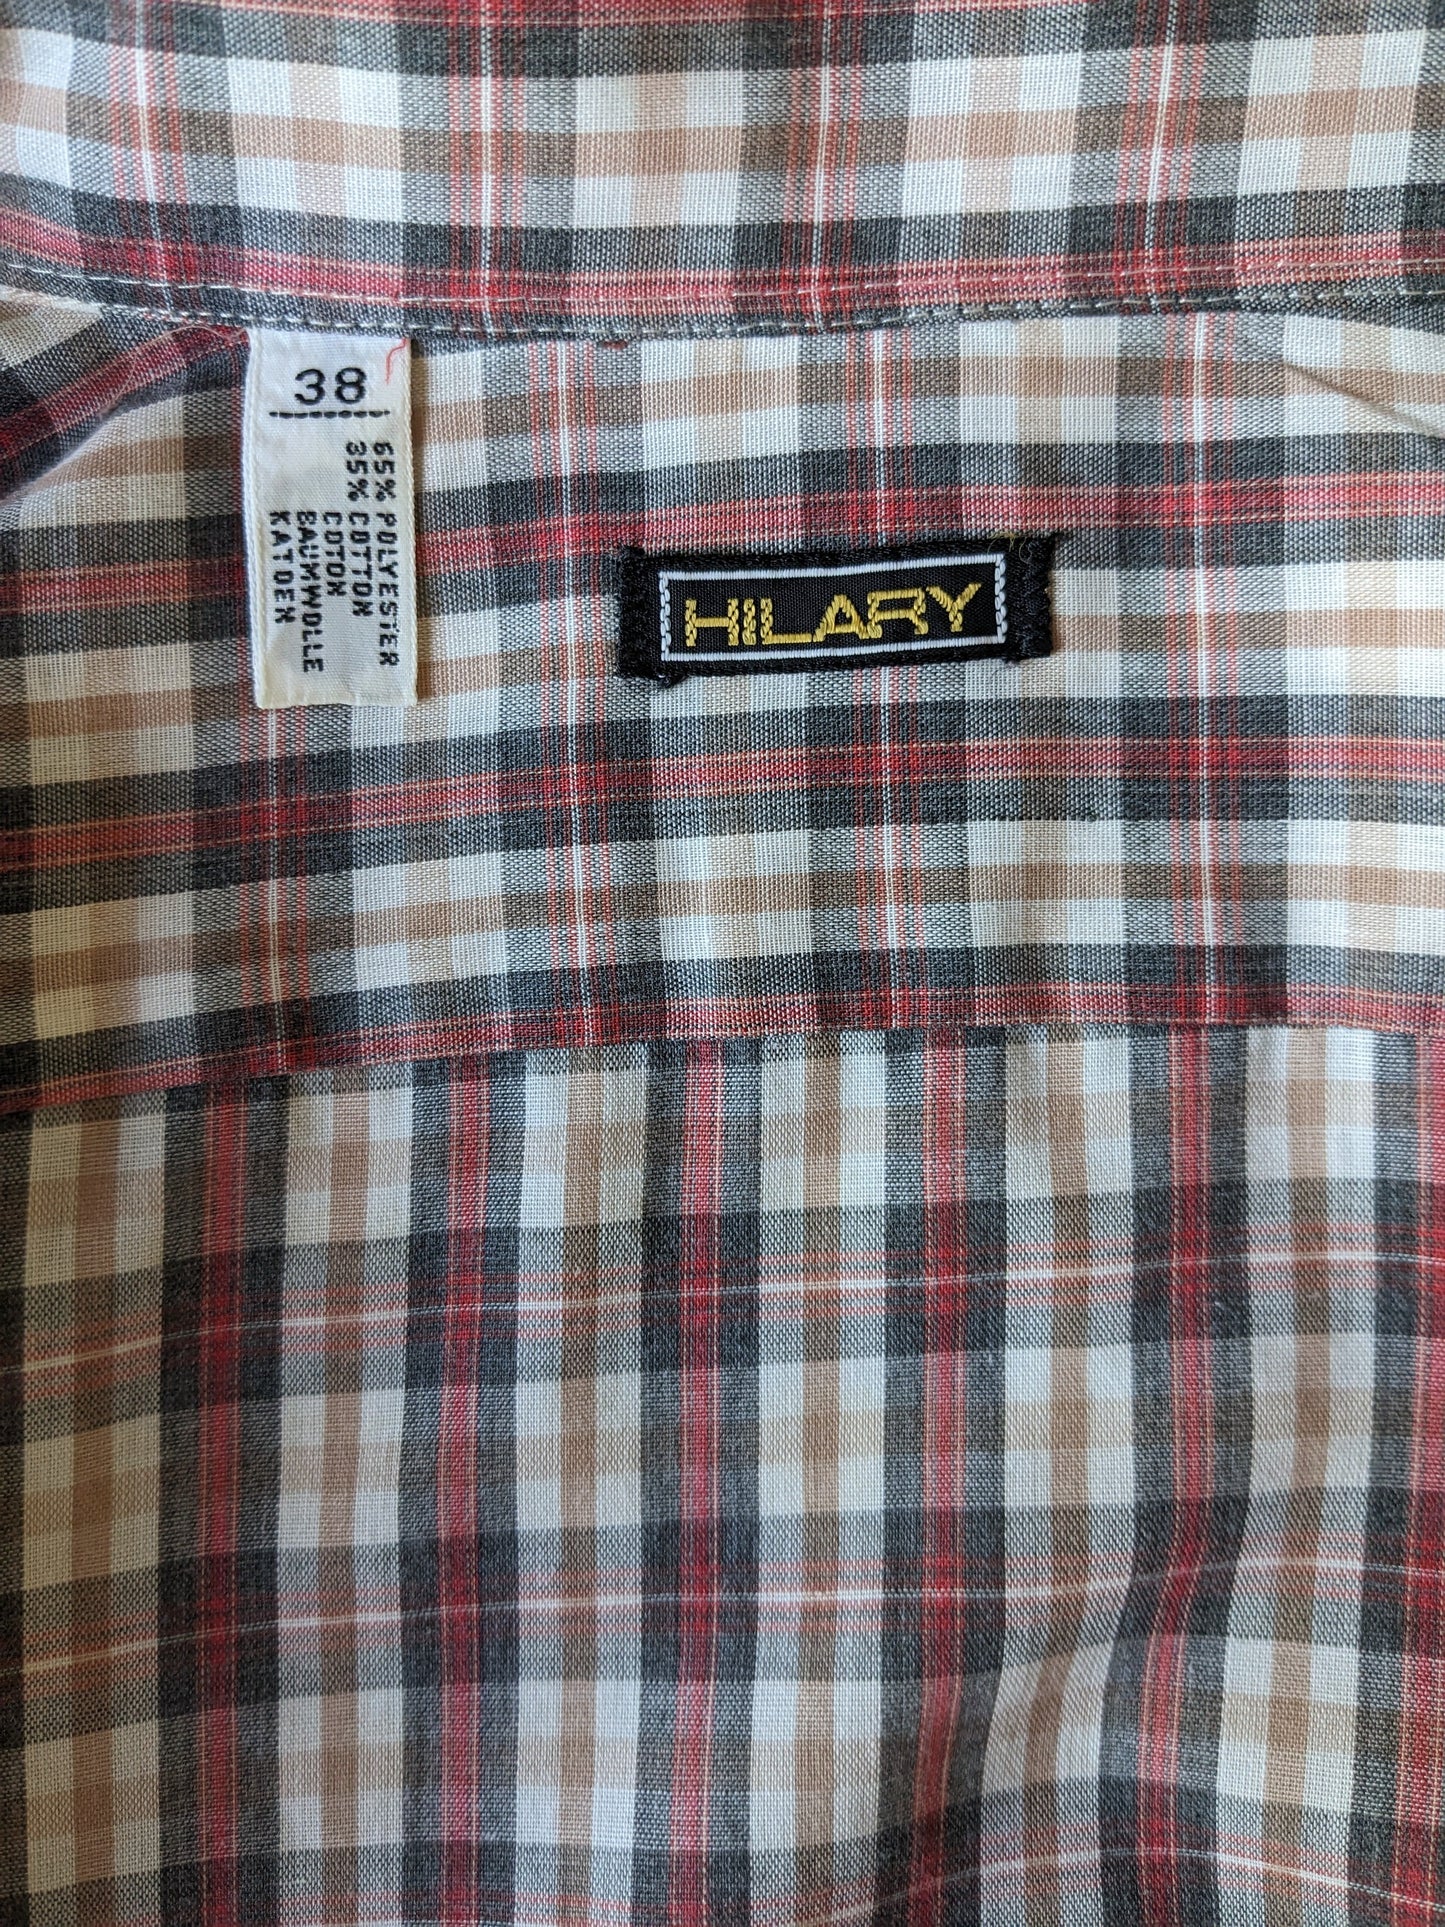 Vintage 70er Hilary Tailed -Hemd. Red Black Pink Checked. Größe 38 / S.